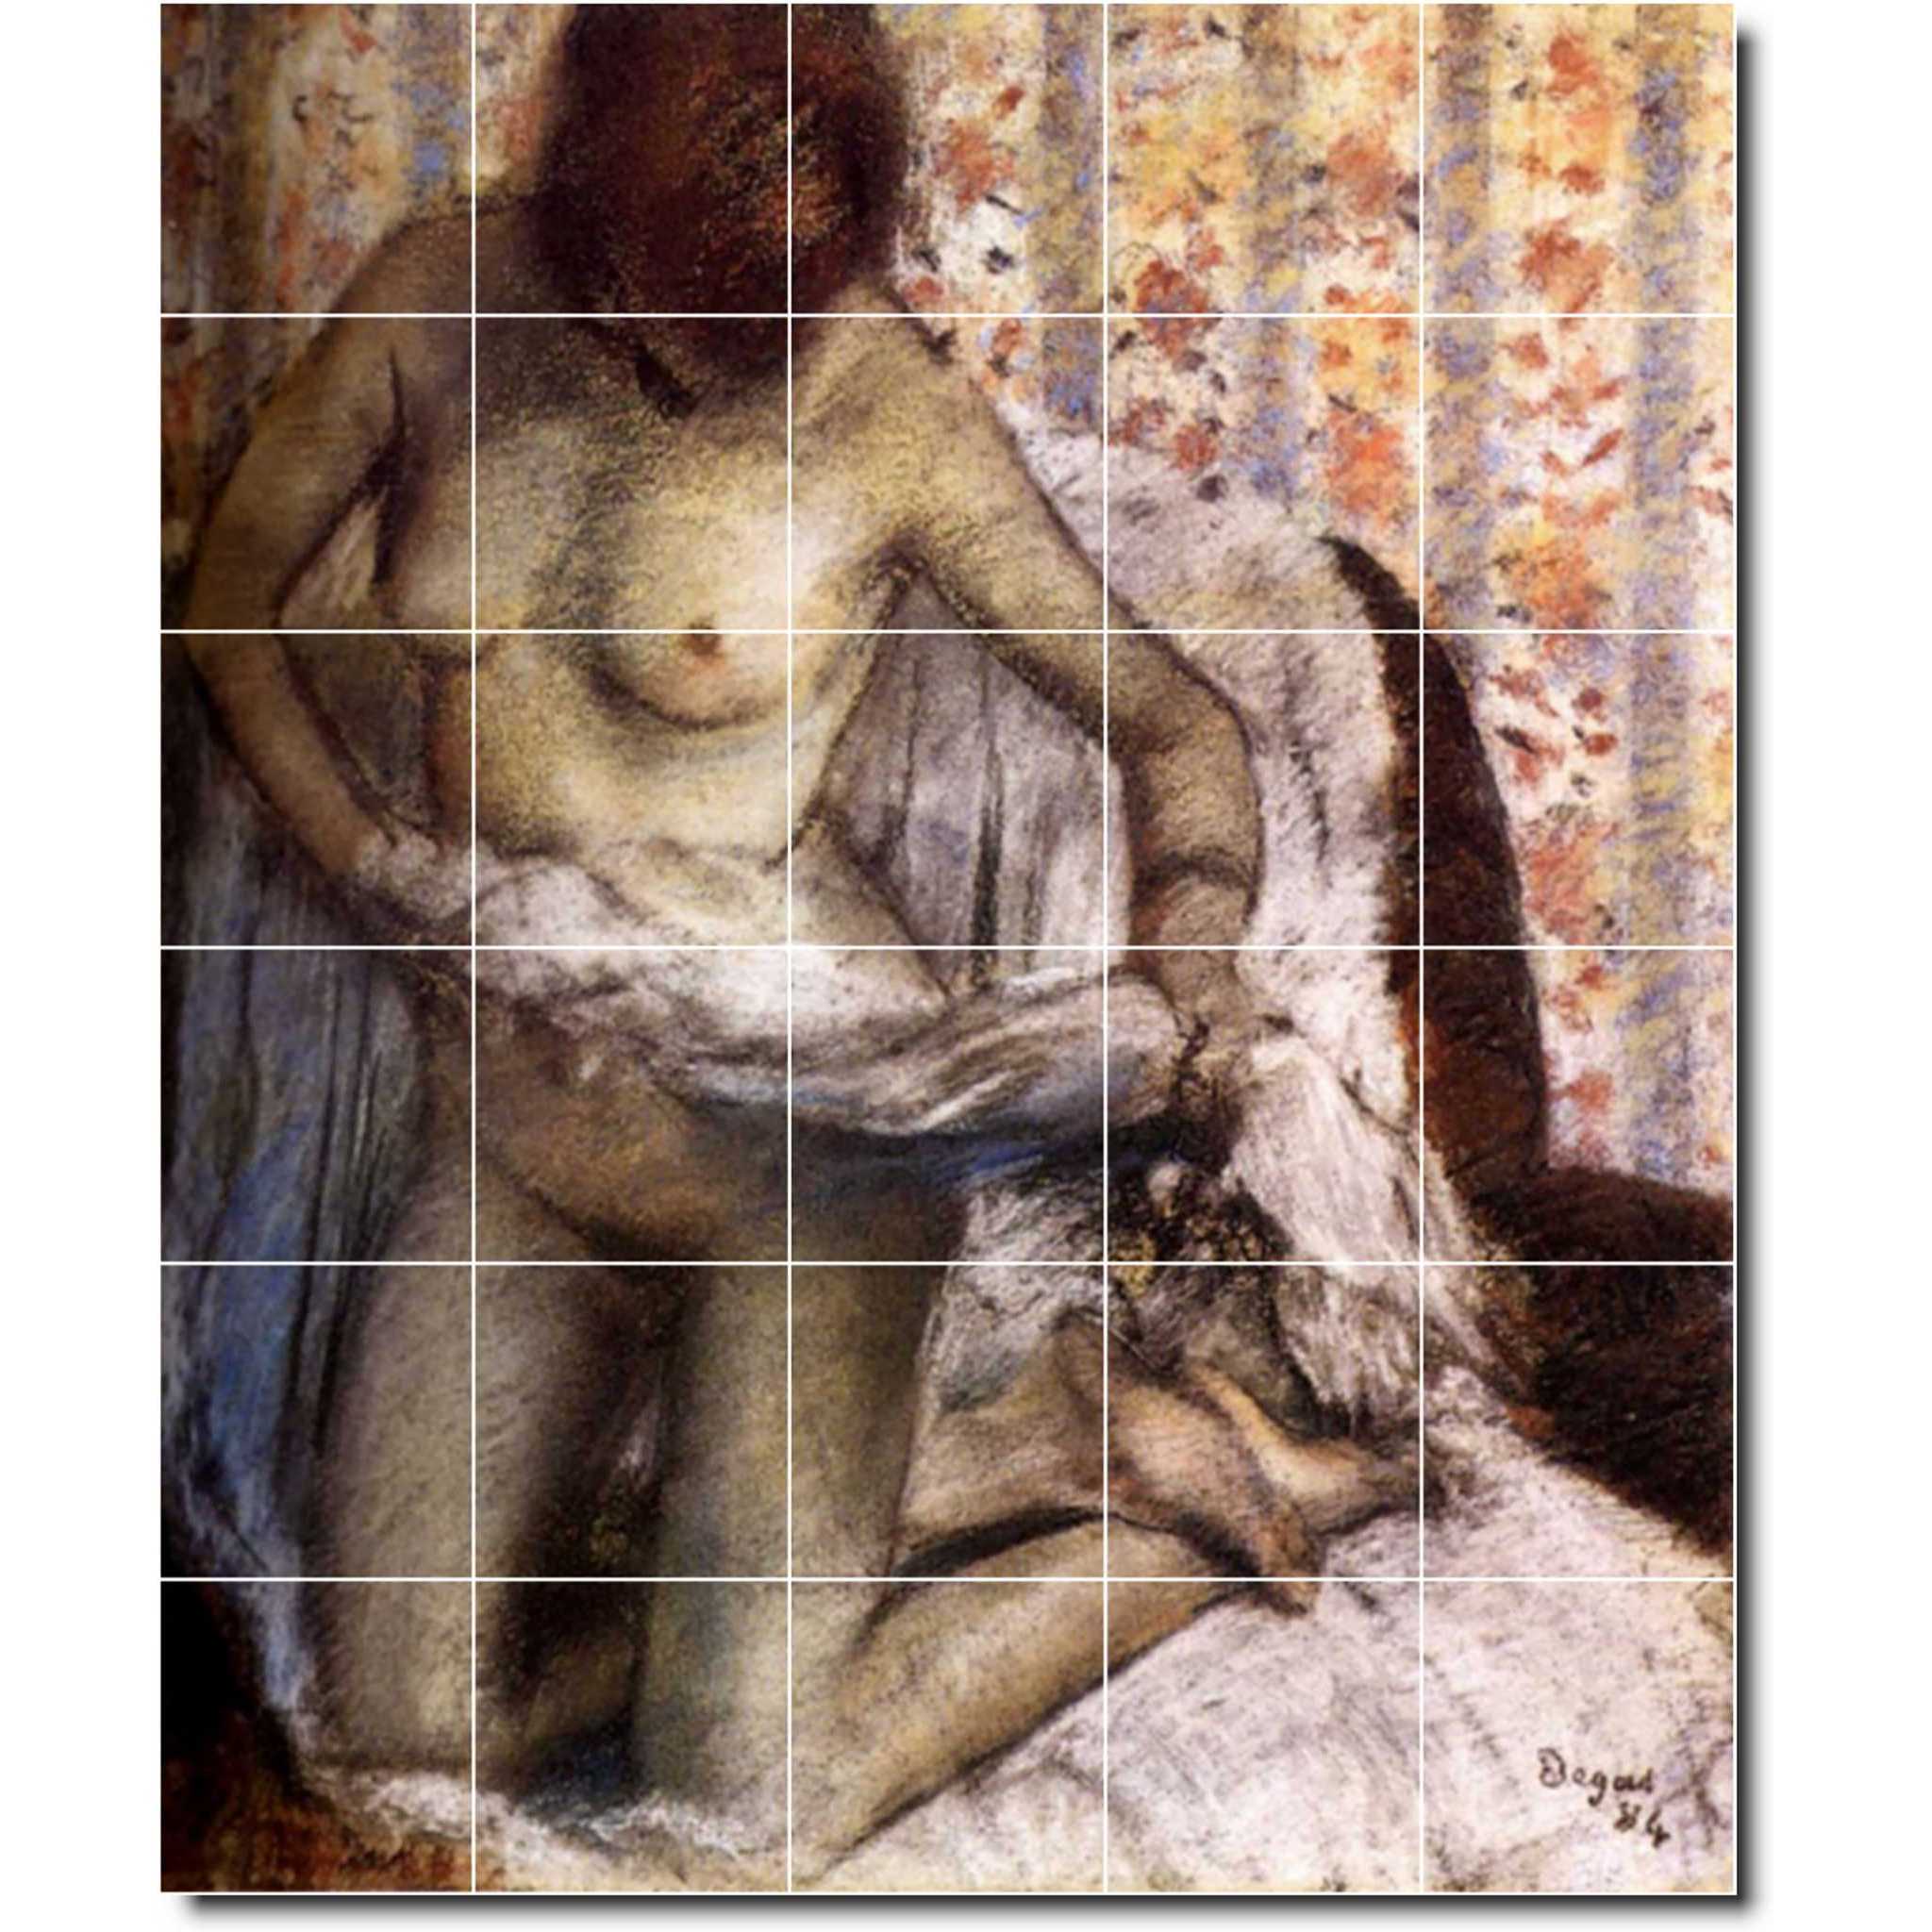 edgar degas nude painting ceramic tile mural p02364